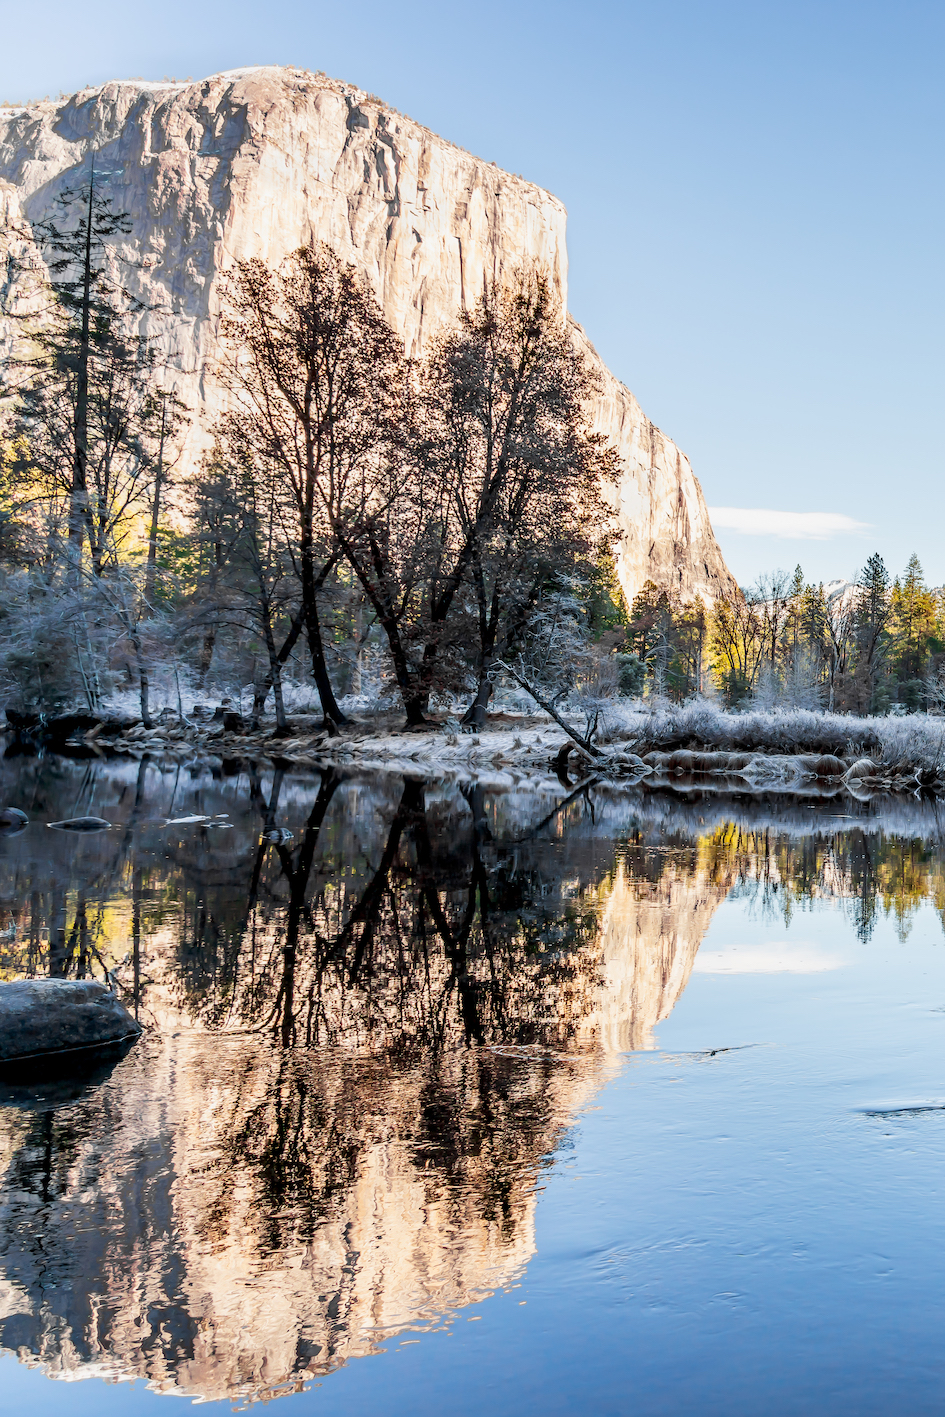 Yosemite National Park. Sony A7RIII Camera, FE 24-105mm Sony lens.